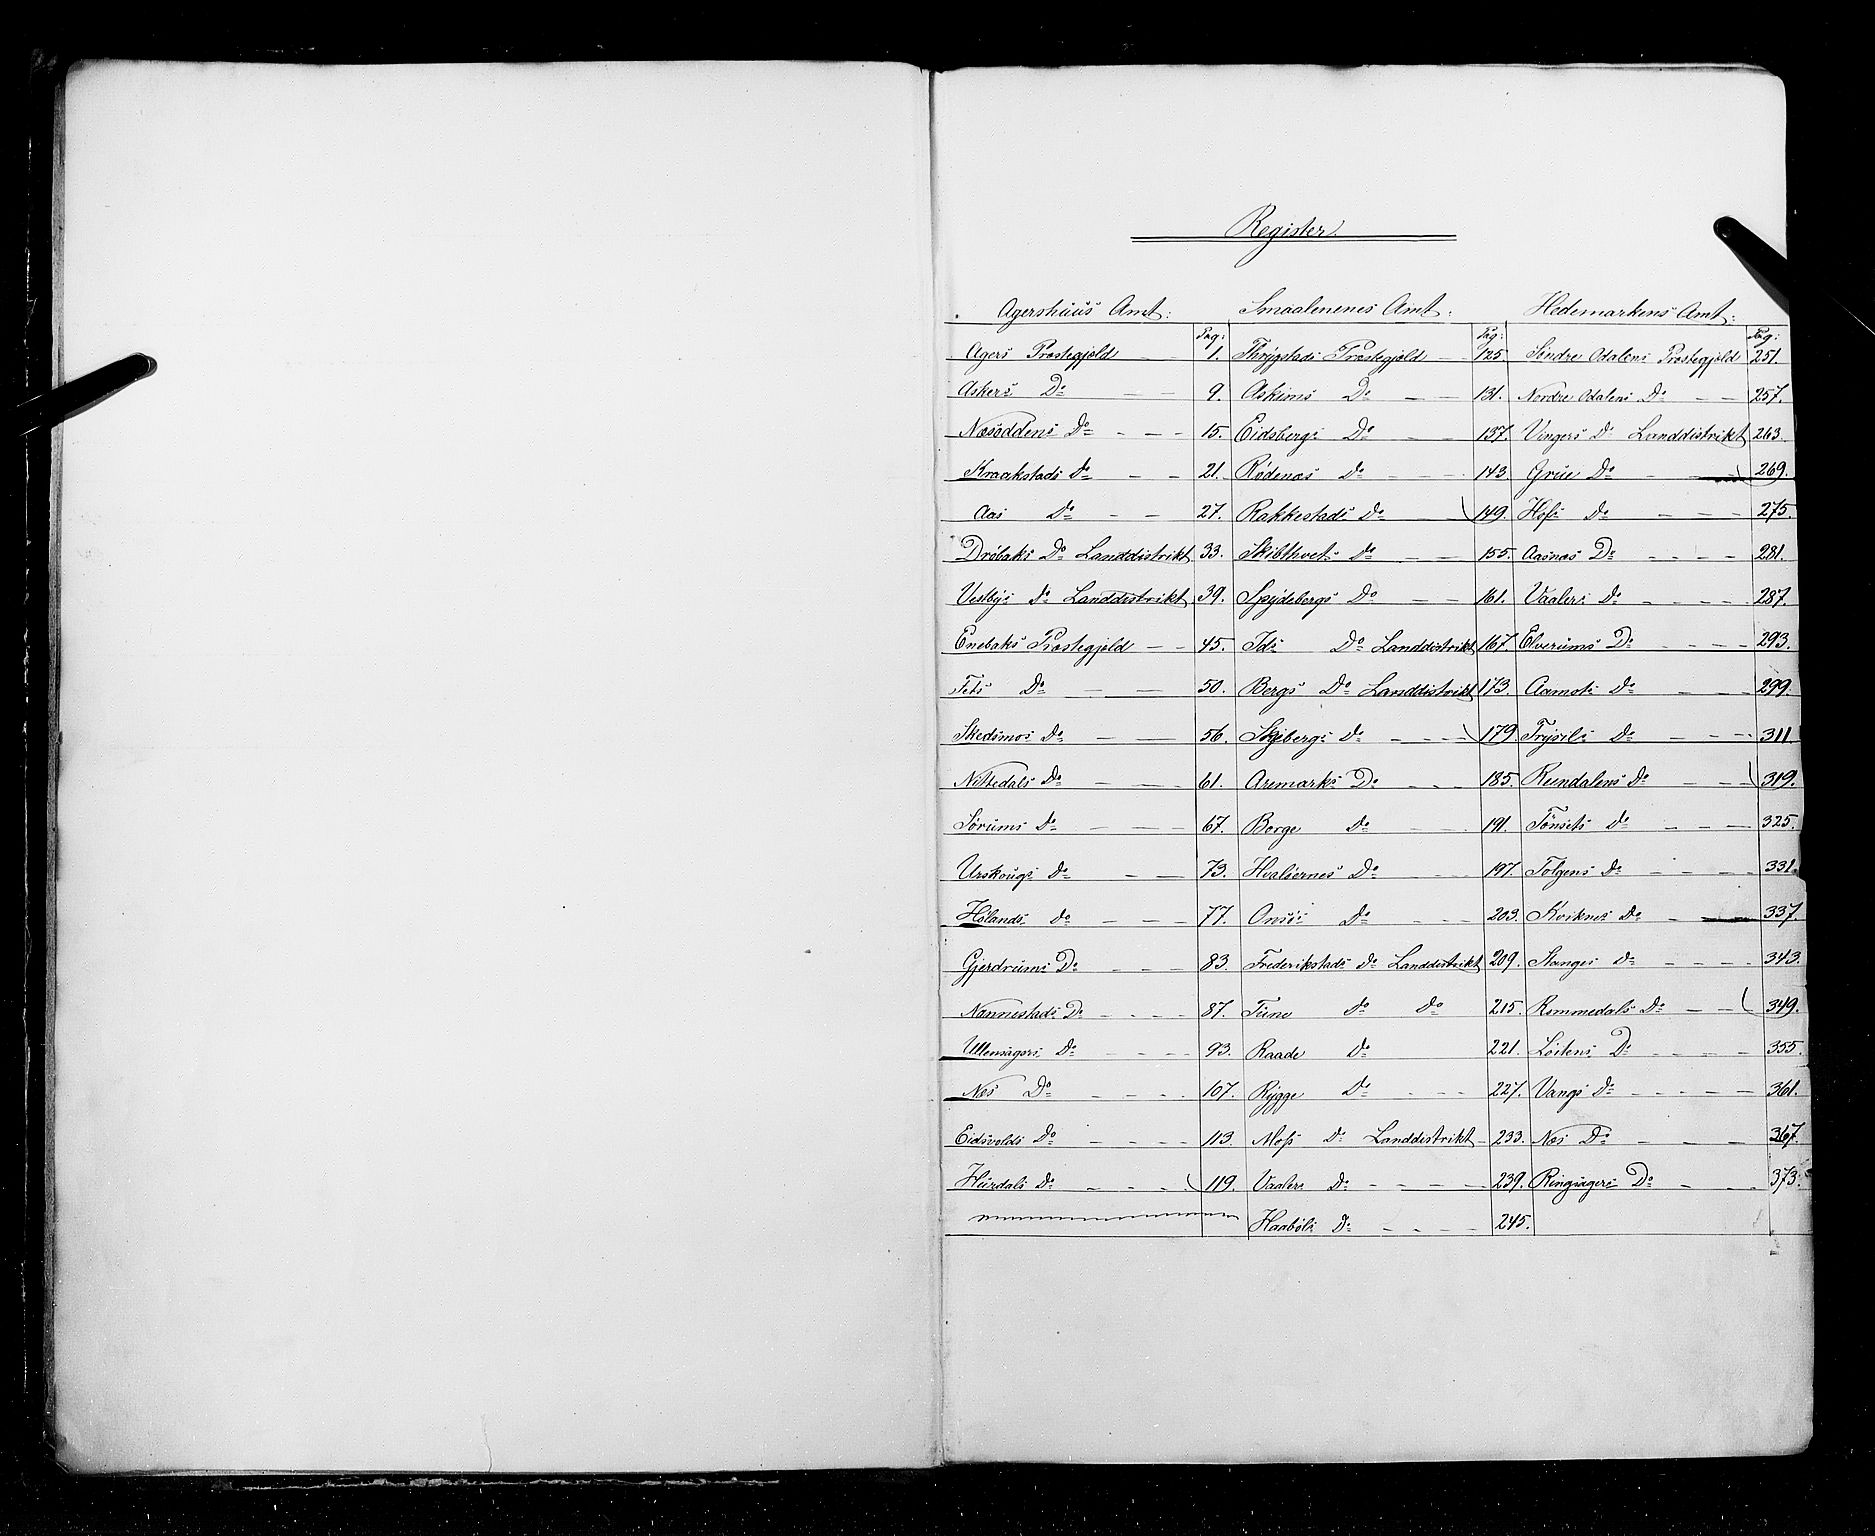 RA, Folketellingen 1855, bind 1: Akershus amt, Smålenenes amt og Hedemarken amt, 1855